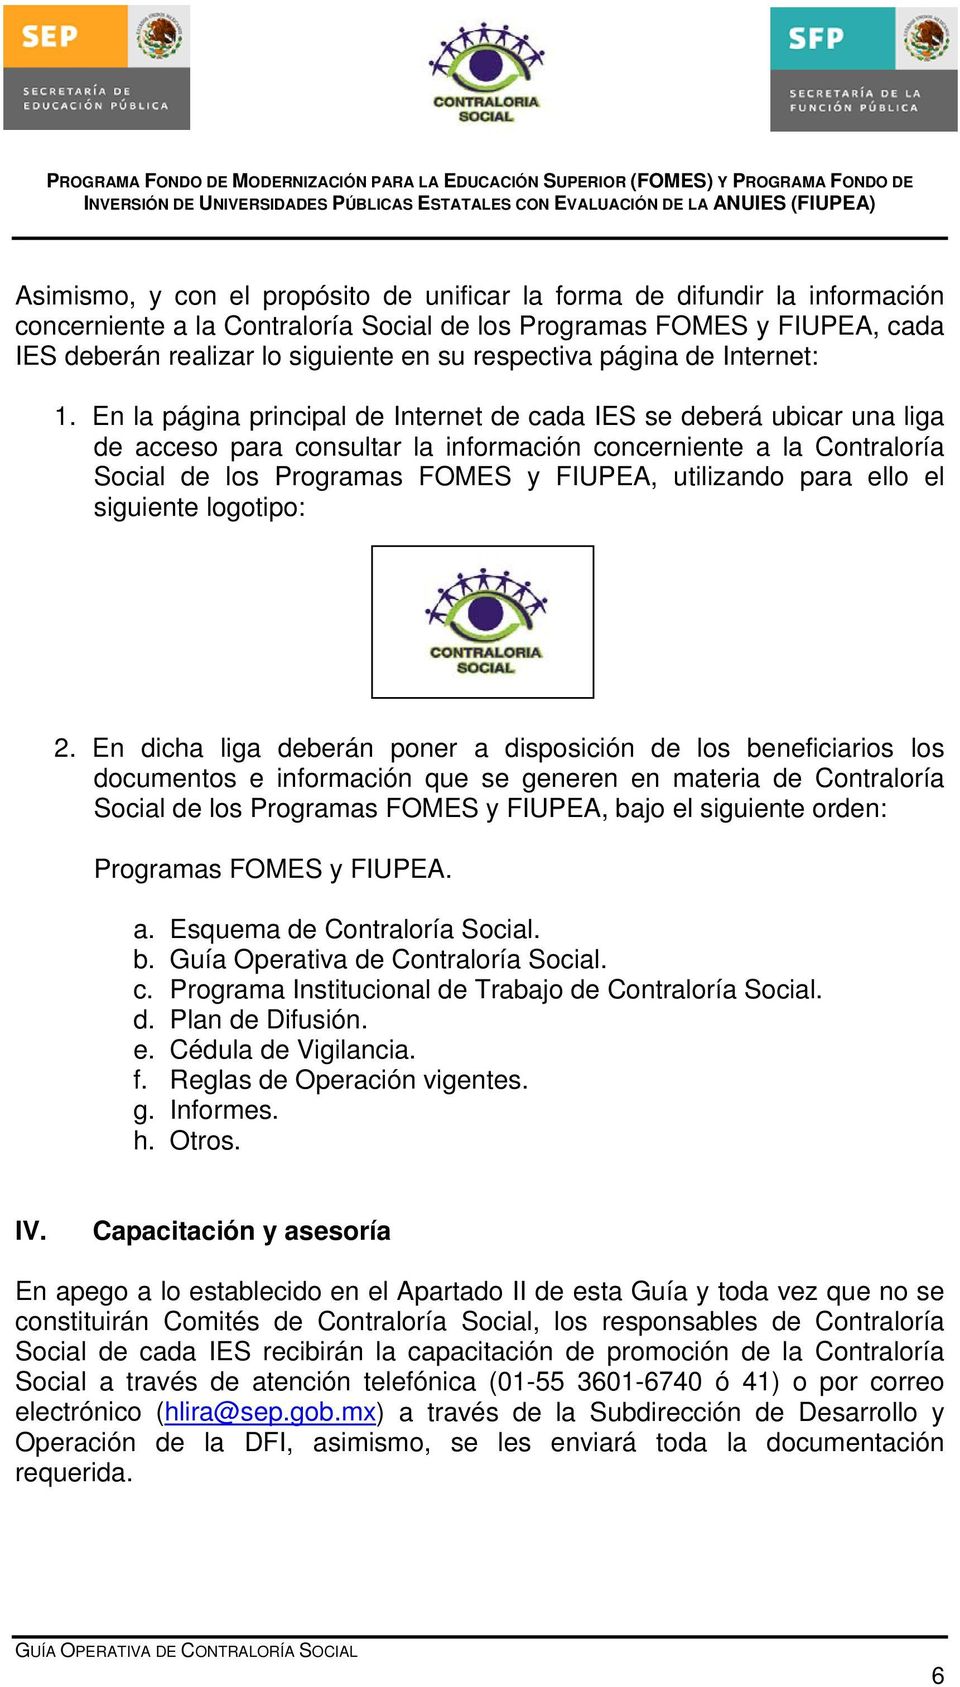 En la página principal de Internet de cada IES se deberá ubicar una liga de acceso para consultar la información concerniente a la Contraloría Social de los Programas FOMES y FIUPEA, utilizando para